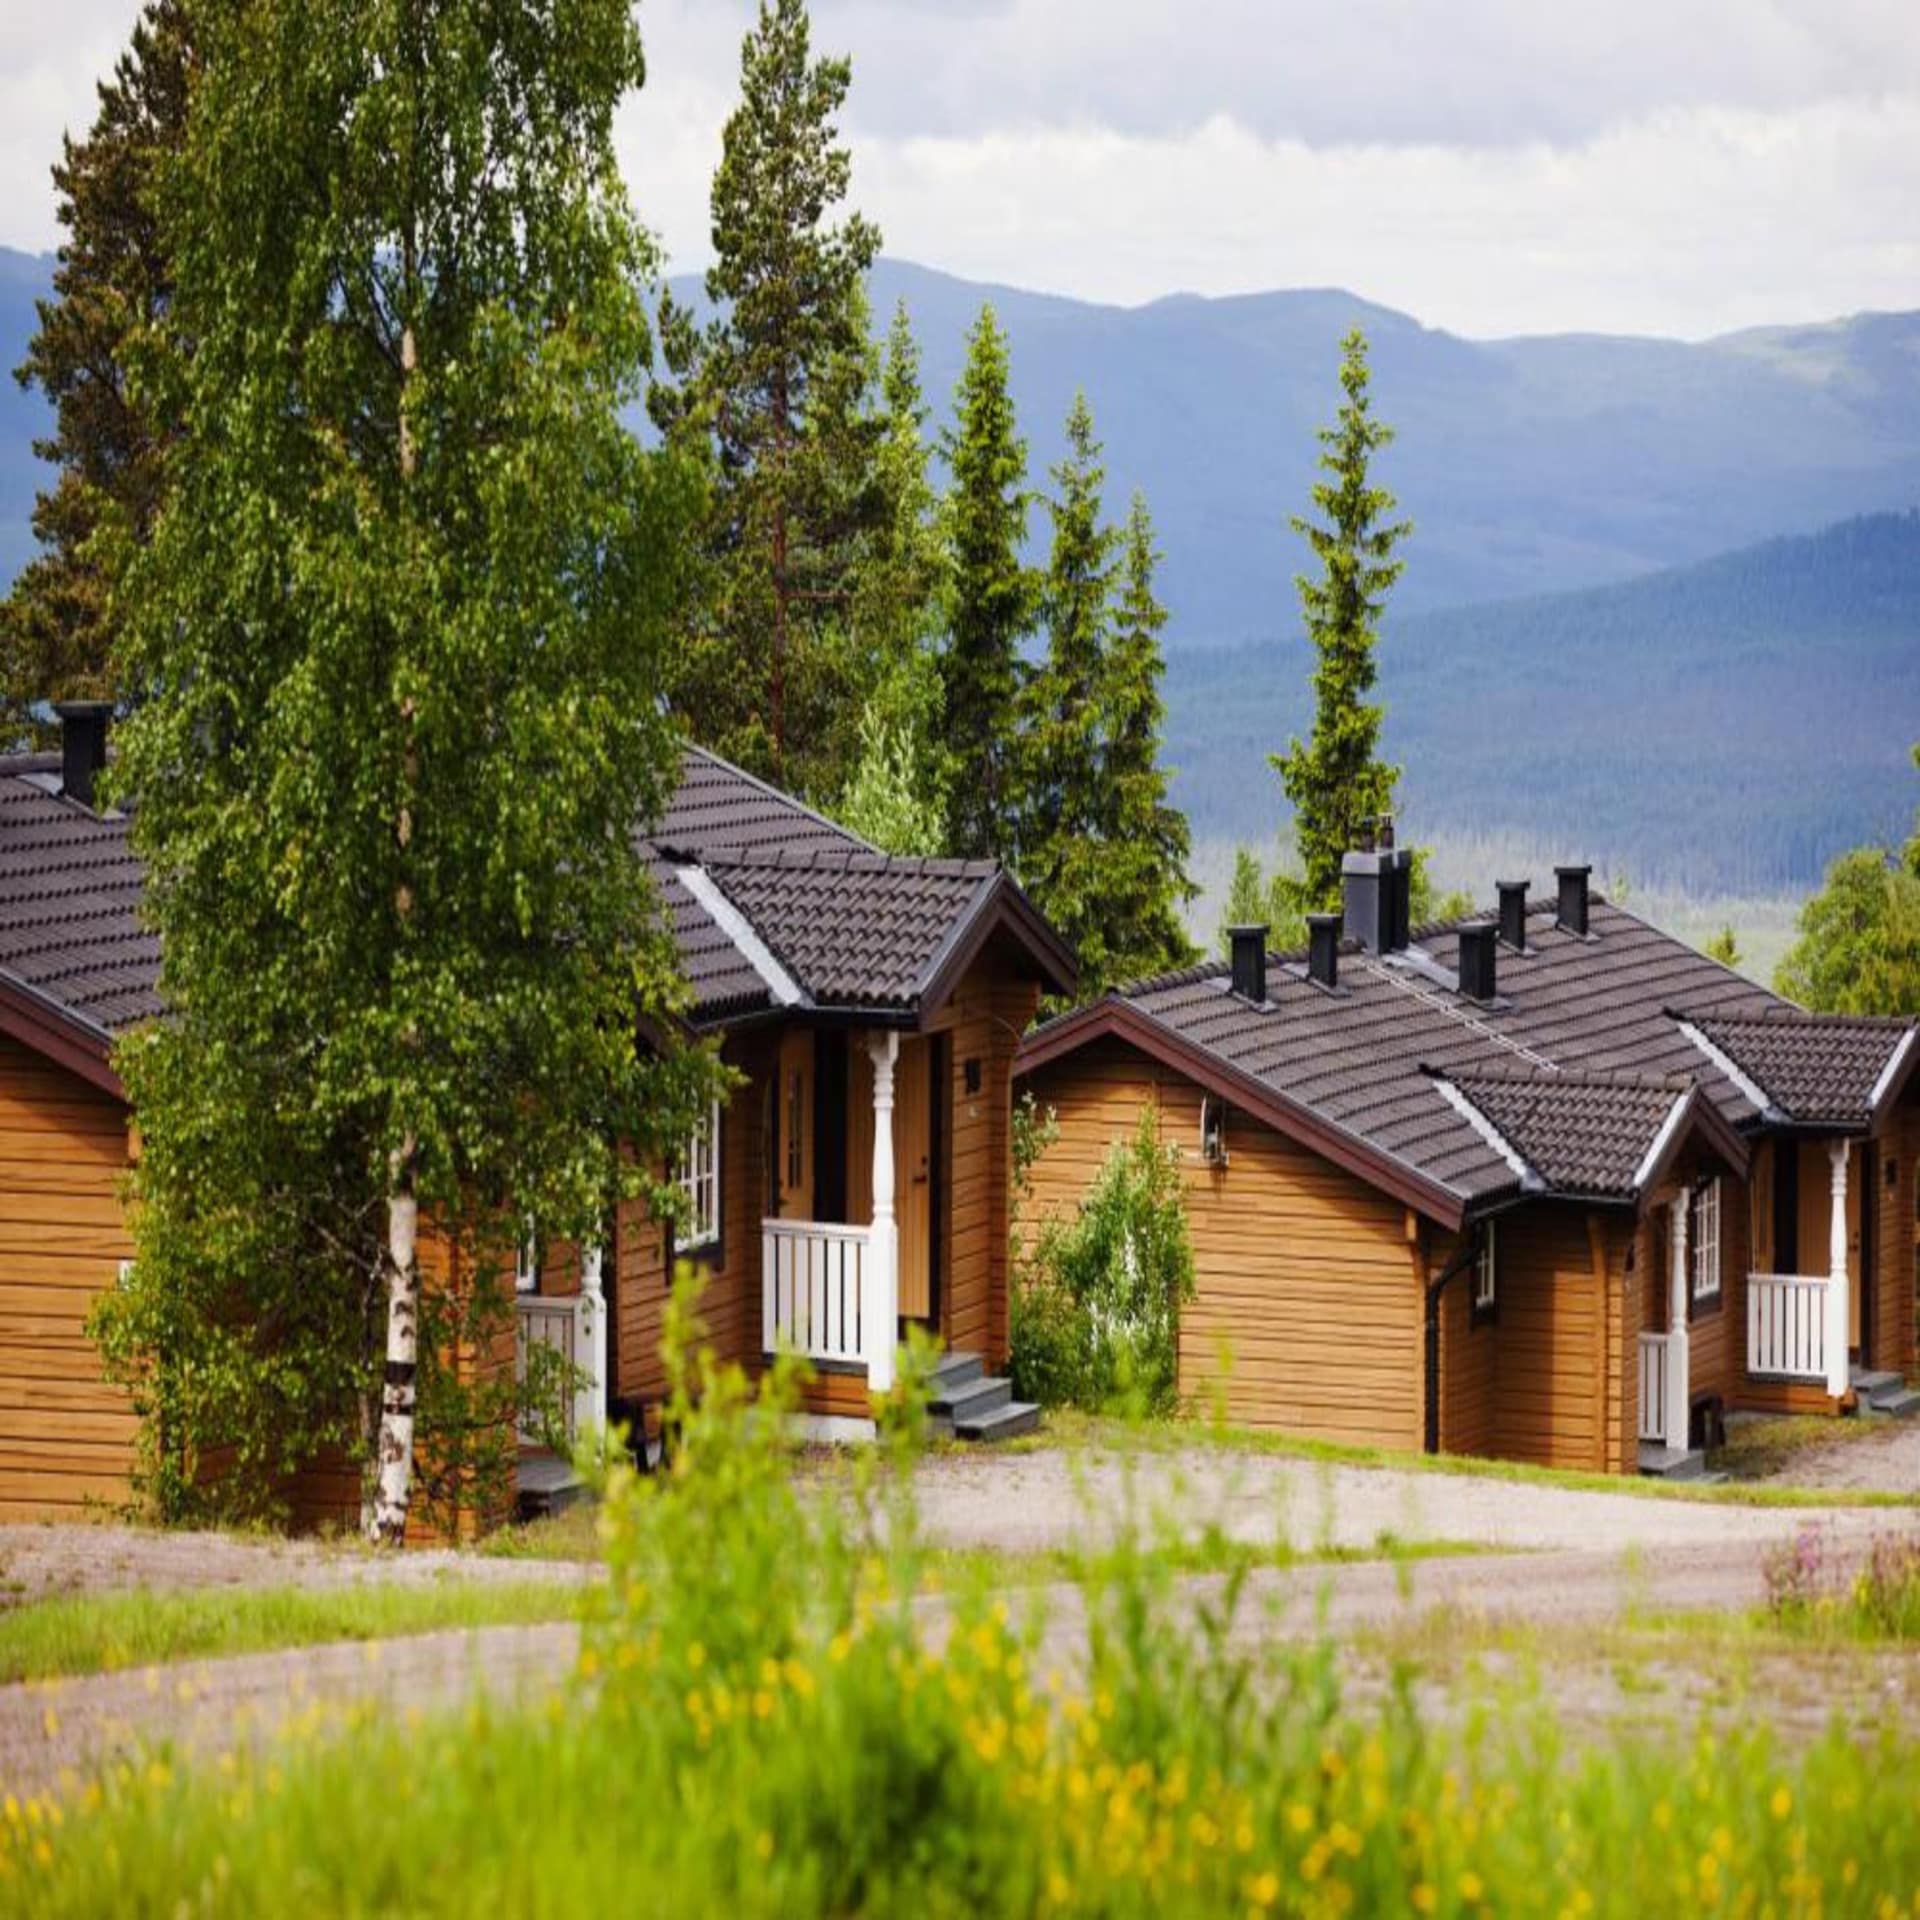 Allgäu oder Värmland? Diese Holzhäuser eines Ferienparks in Schweden könnten auch in Süddeutschland stehen.